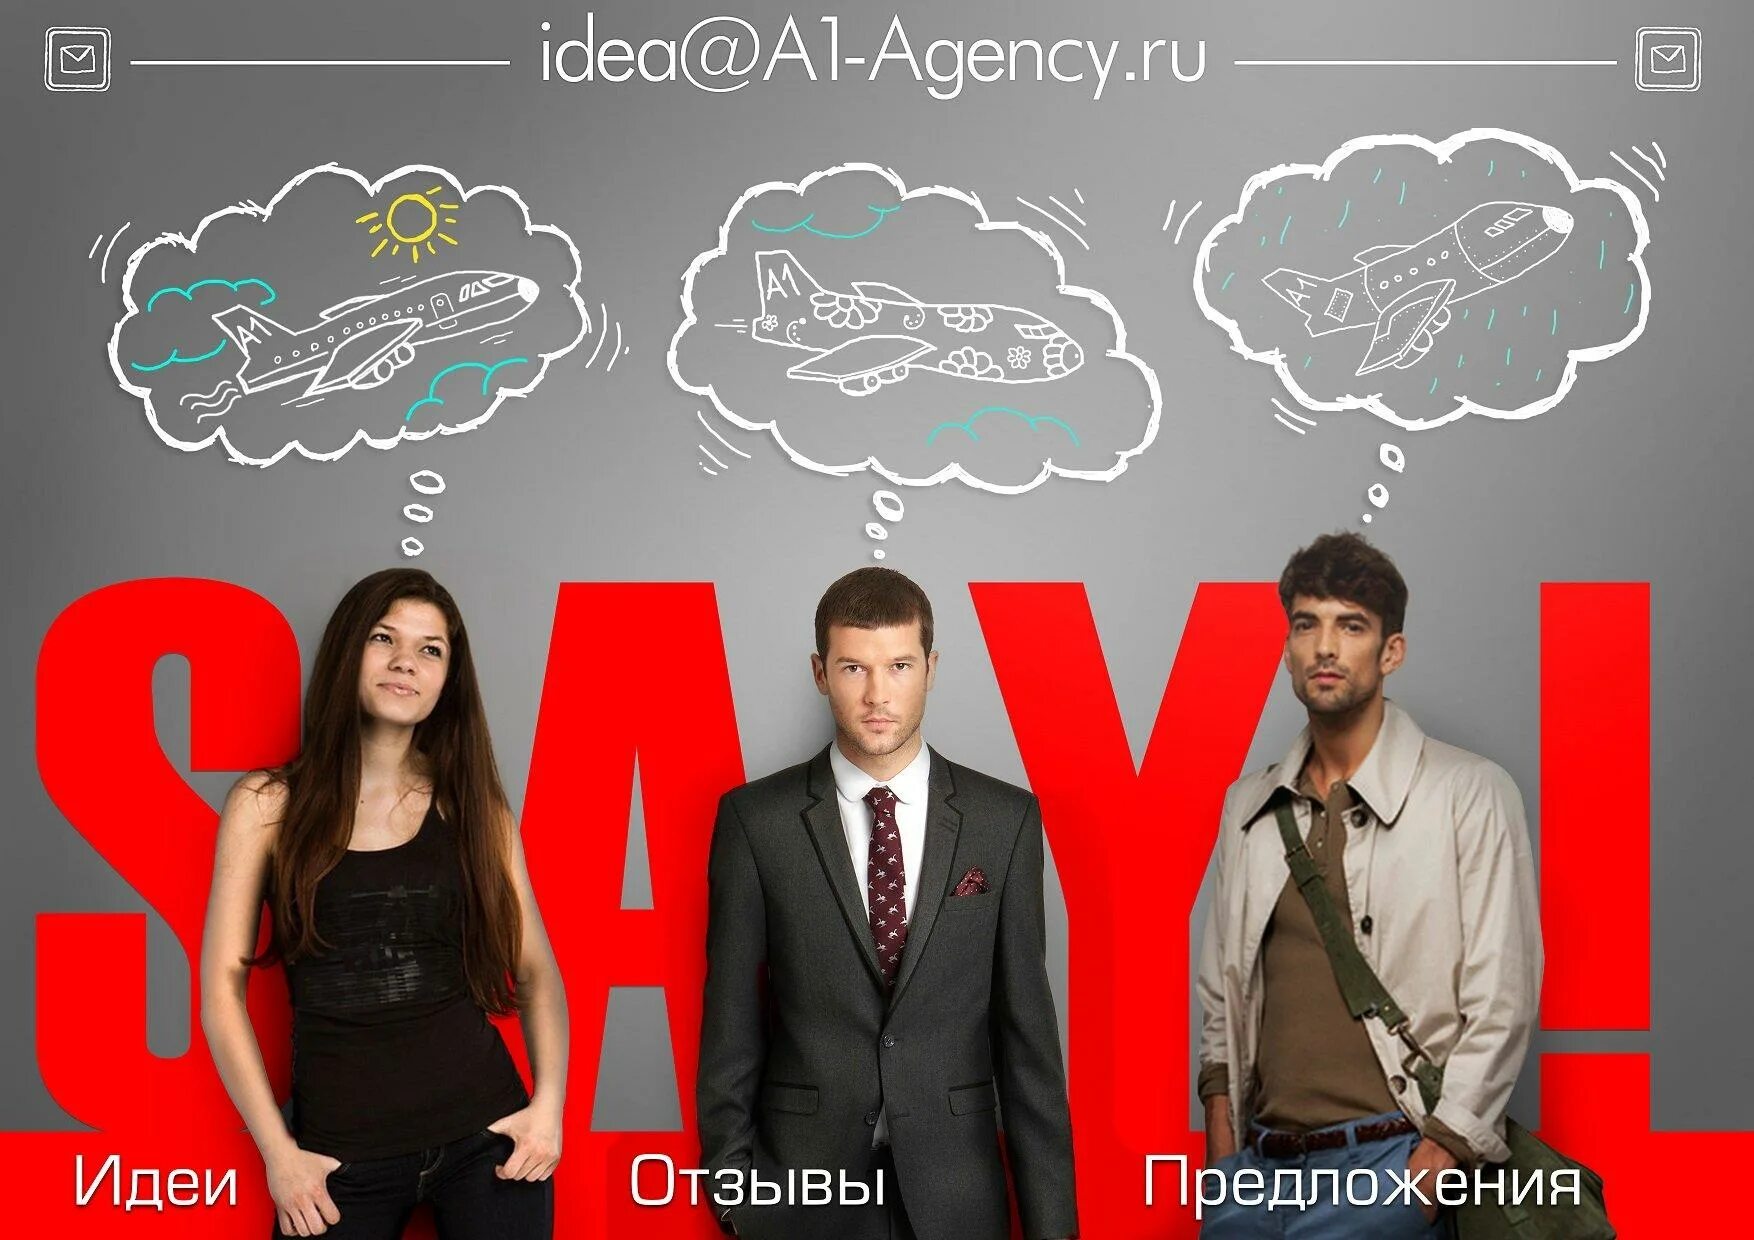 Агентство первая компания. БТЛ агентство. А1 агентство. Специалист в рекламных или PR-агентствах. BTL агентство Москва.